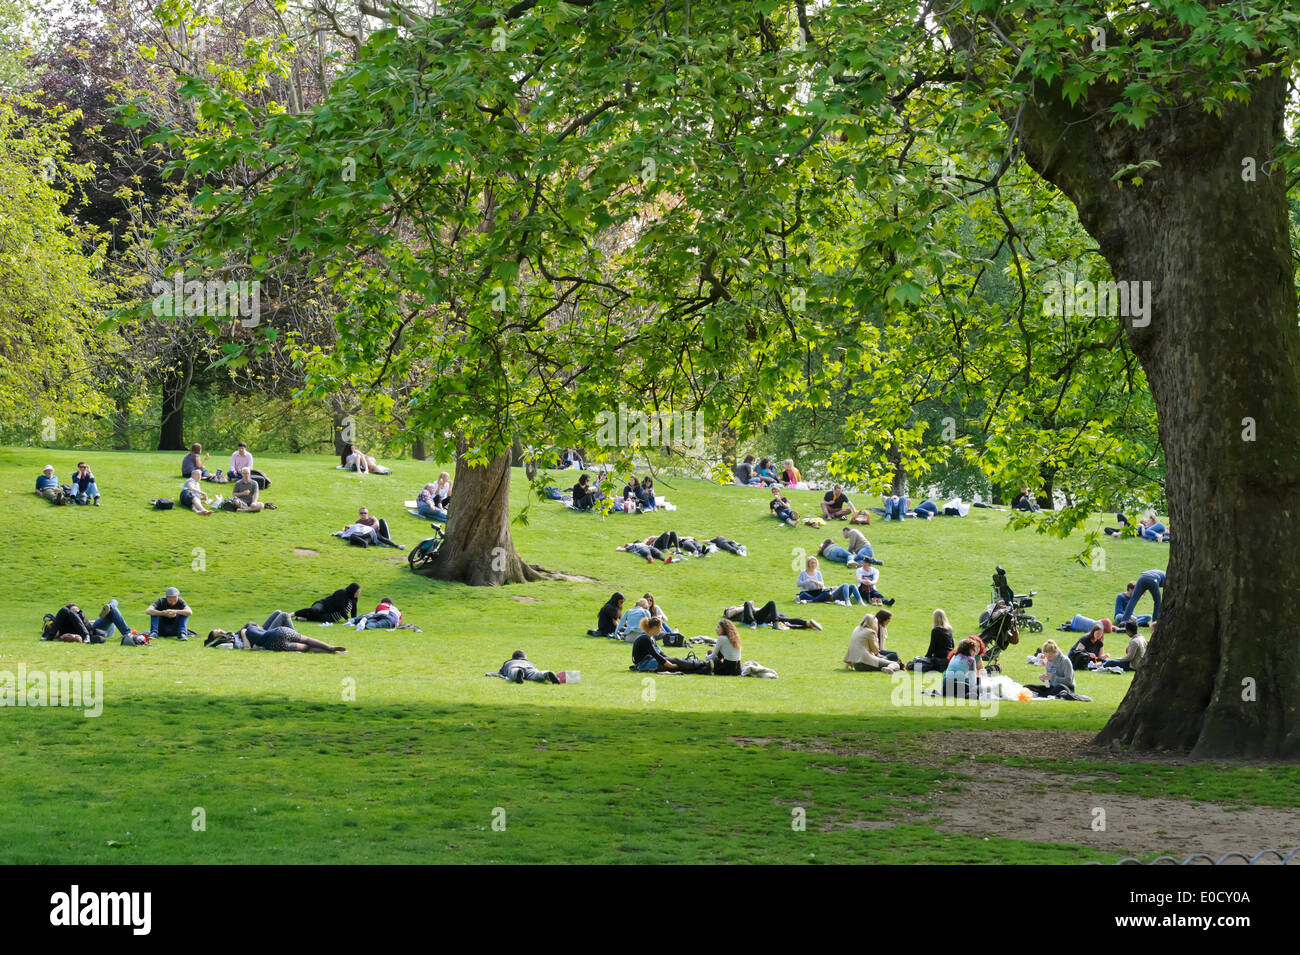 Menschen, die genießen des heißen britische Wetter im Park, London, England, Vereinigtes Königreich. Stockfoto